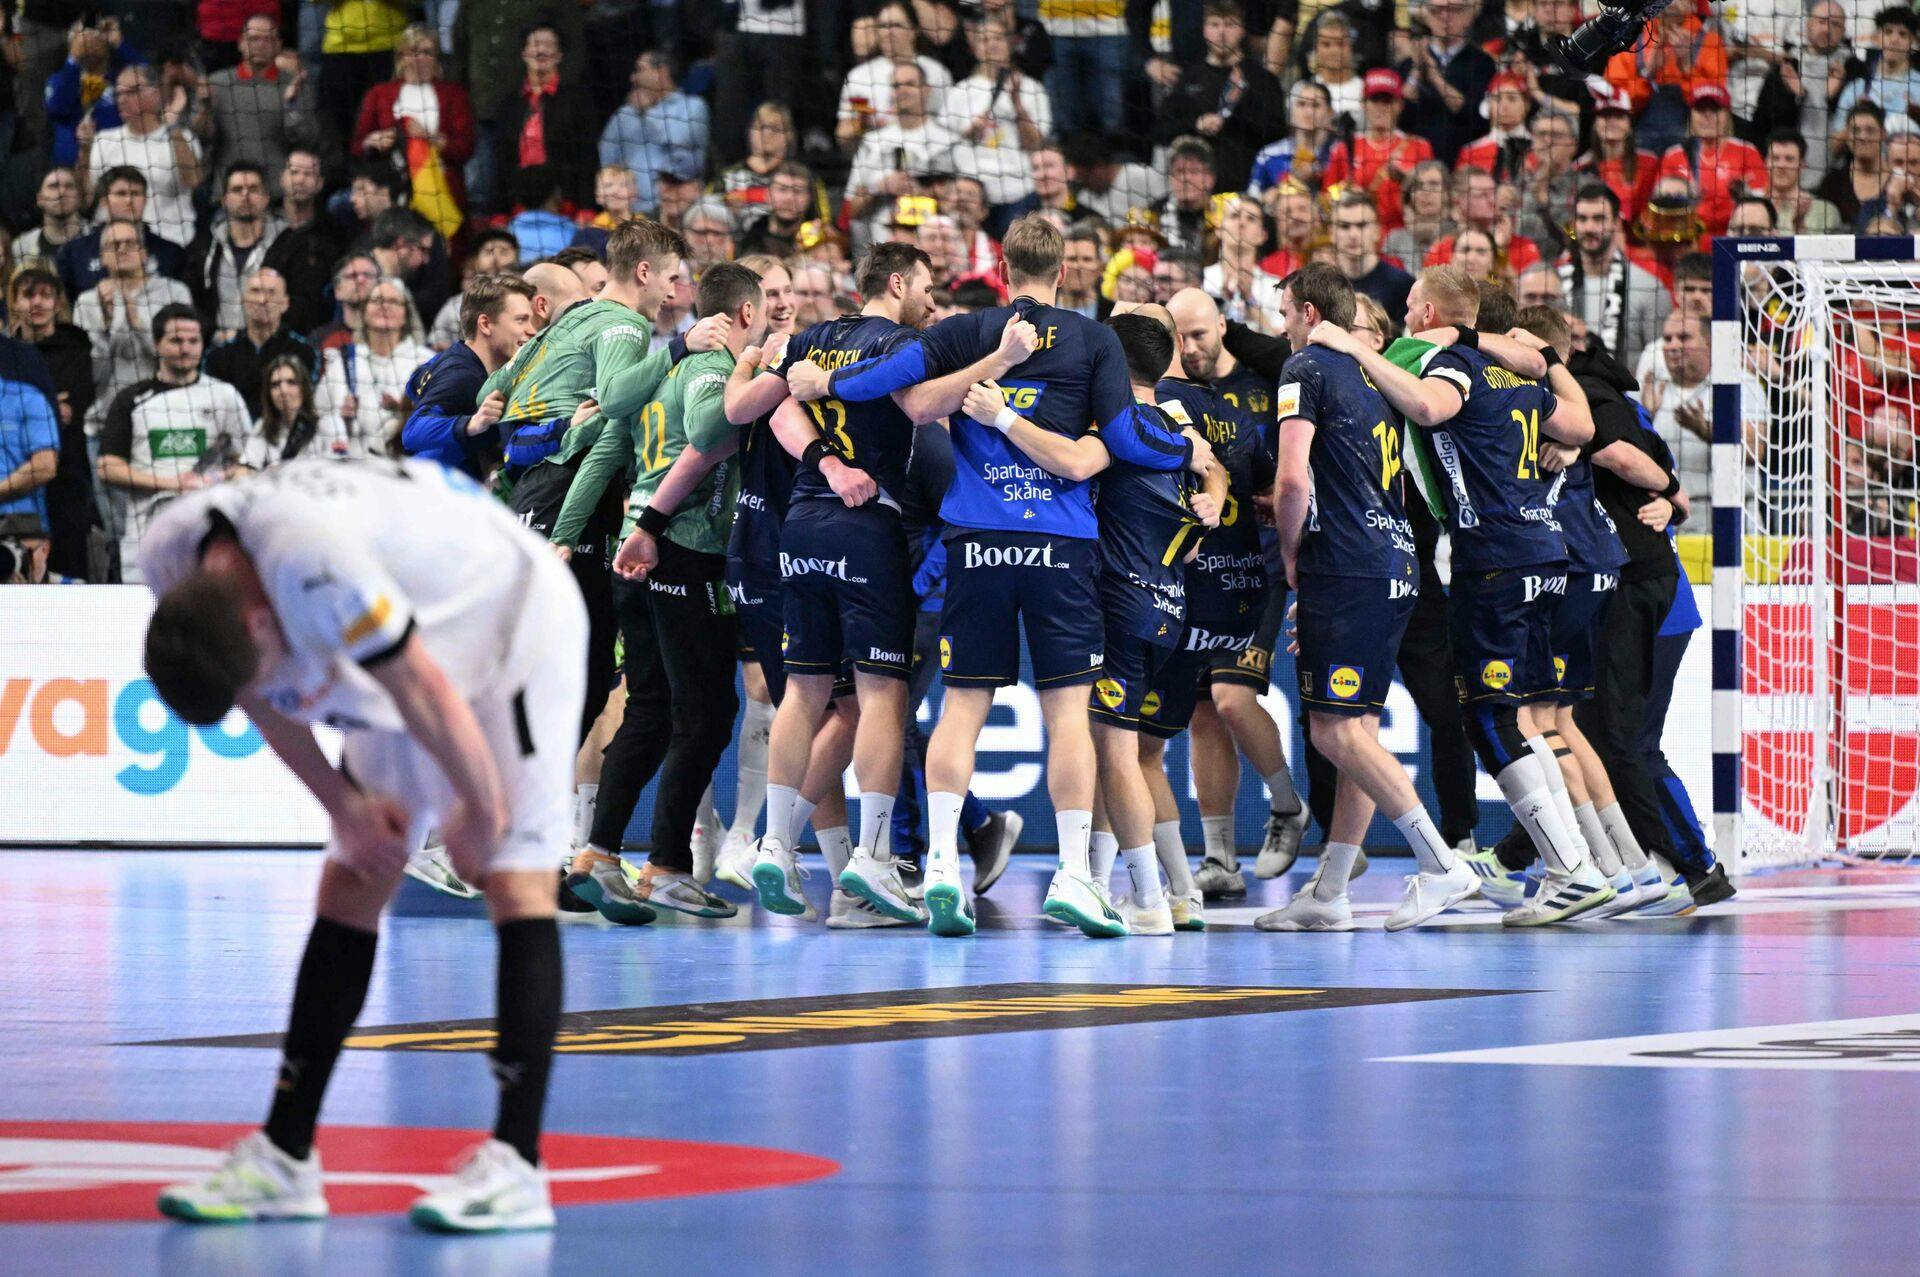 Sverige snuppede bronze ved EM efter en sejr på 34-31 over Tyskland. Det kunne svenskerne blandt andet takke en velspilleden Andreas Palicka i målet for.